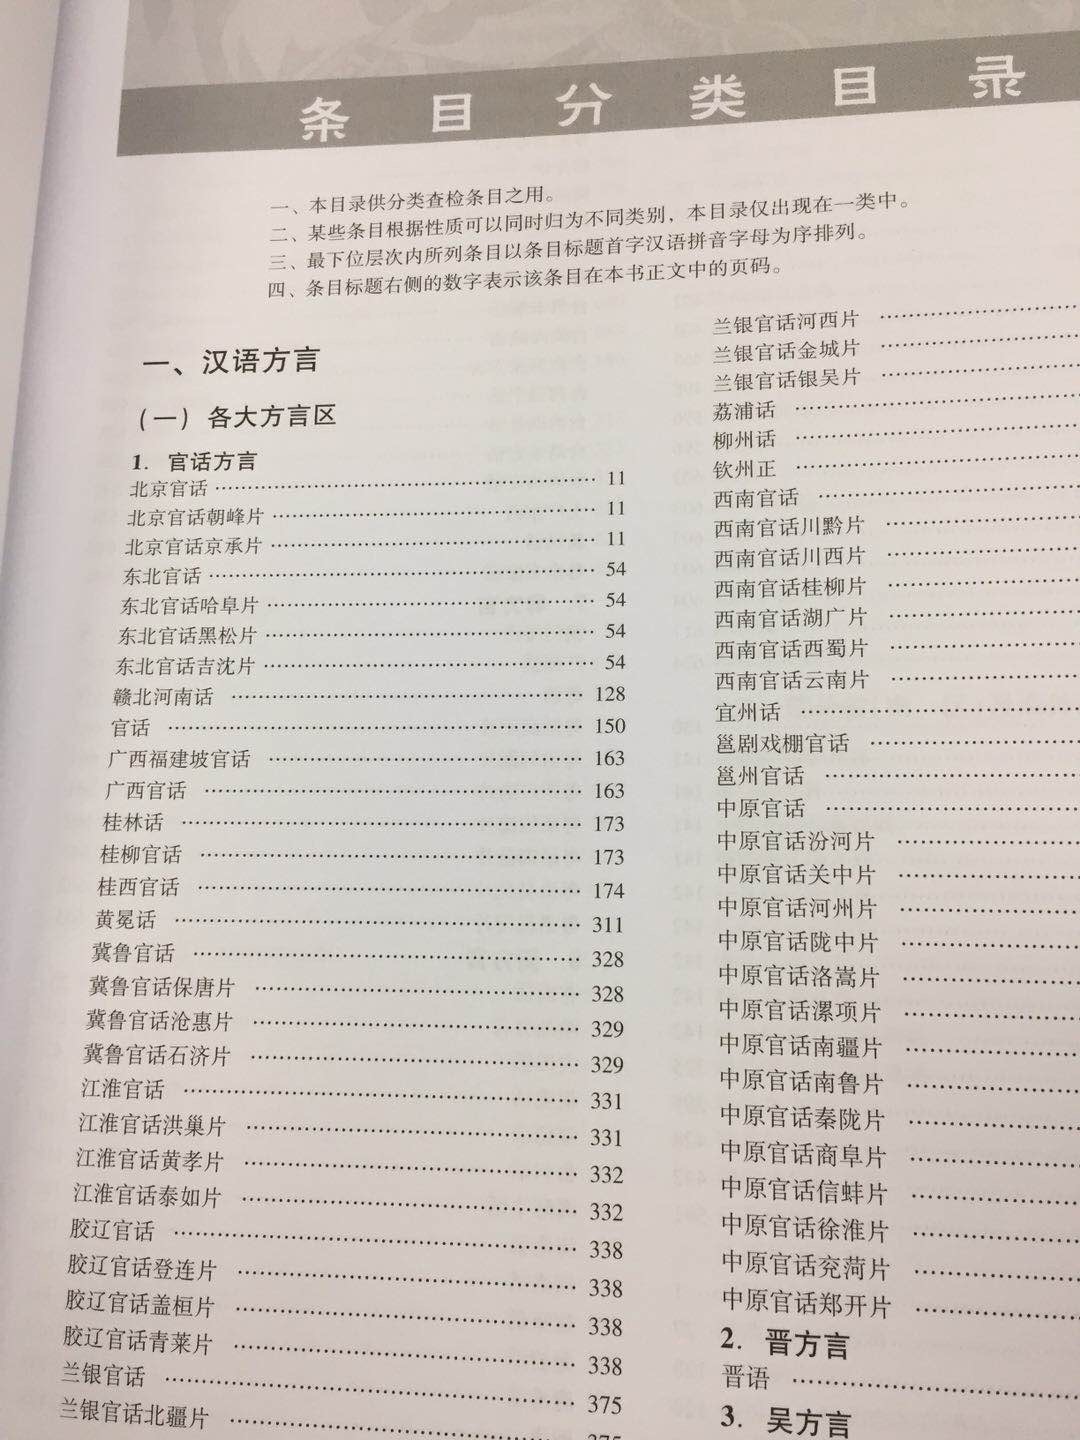 汉语方言学大词典是一部集方言学研究的大成之作，非常有利于方言学的入门和学习，也能对目前国内方言学的研究有一个宏观的认识和概括。半价购买的，非常值得！